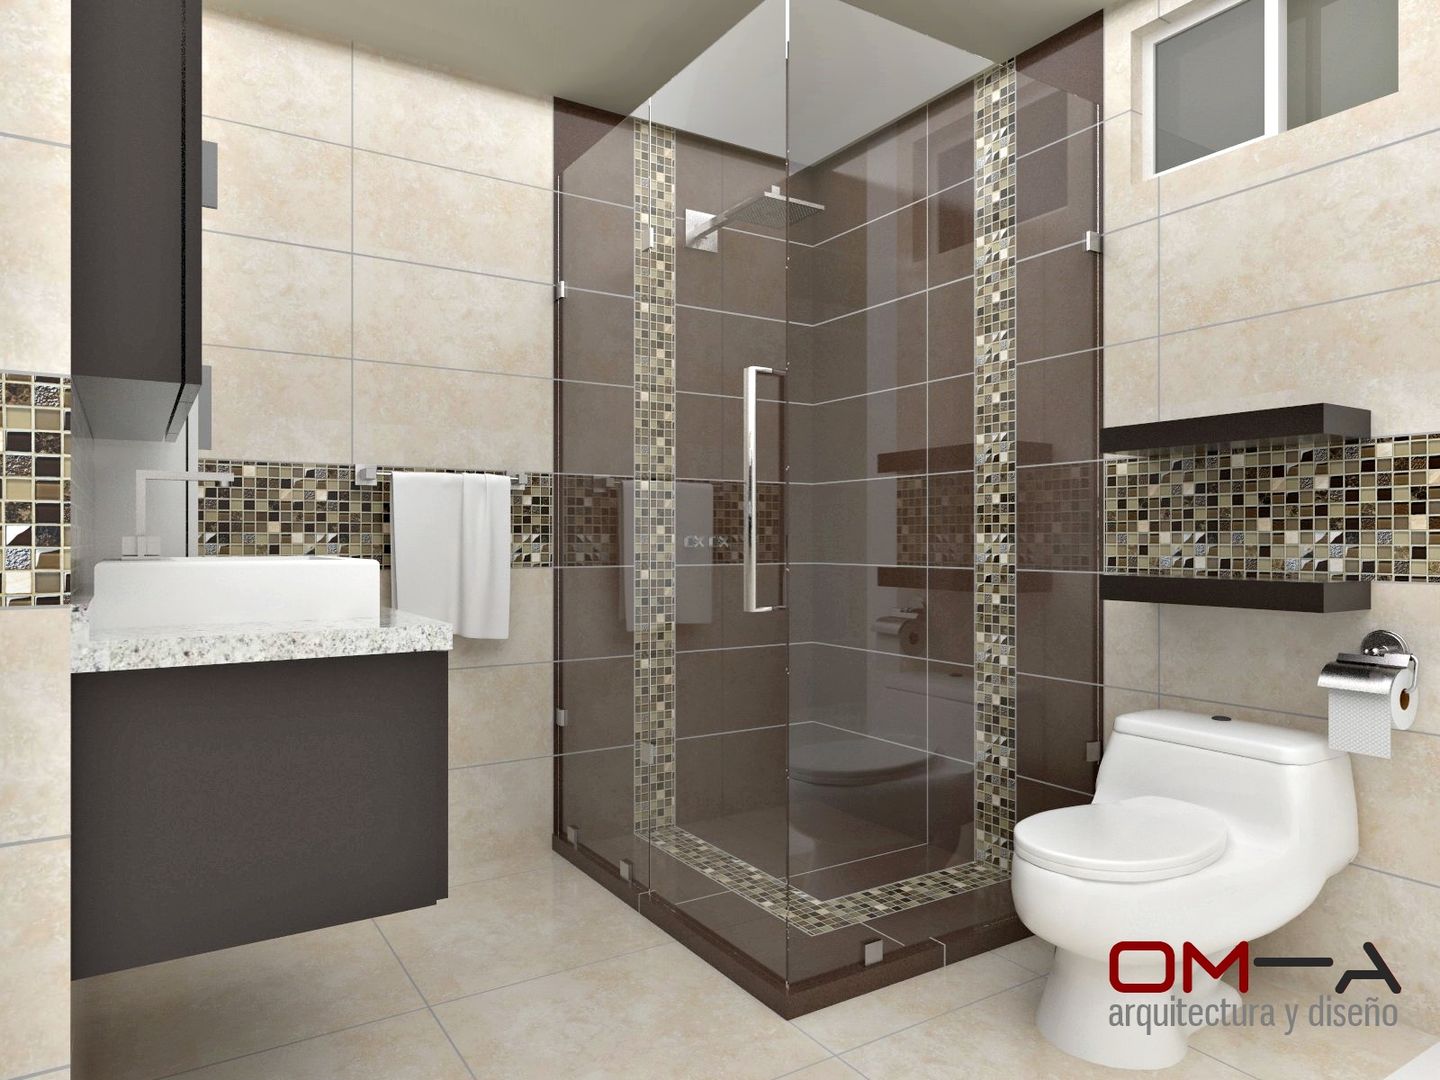 Diseño interior en apartamento , om-a arquitectura y diseño om-a arquitectura y diseño حمام